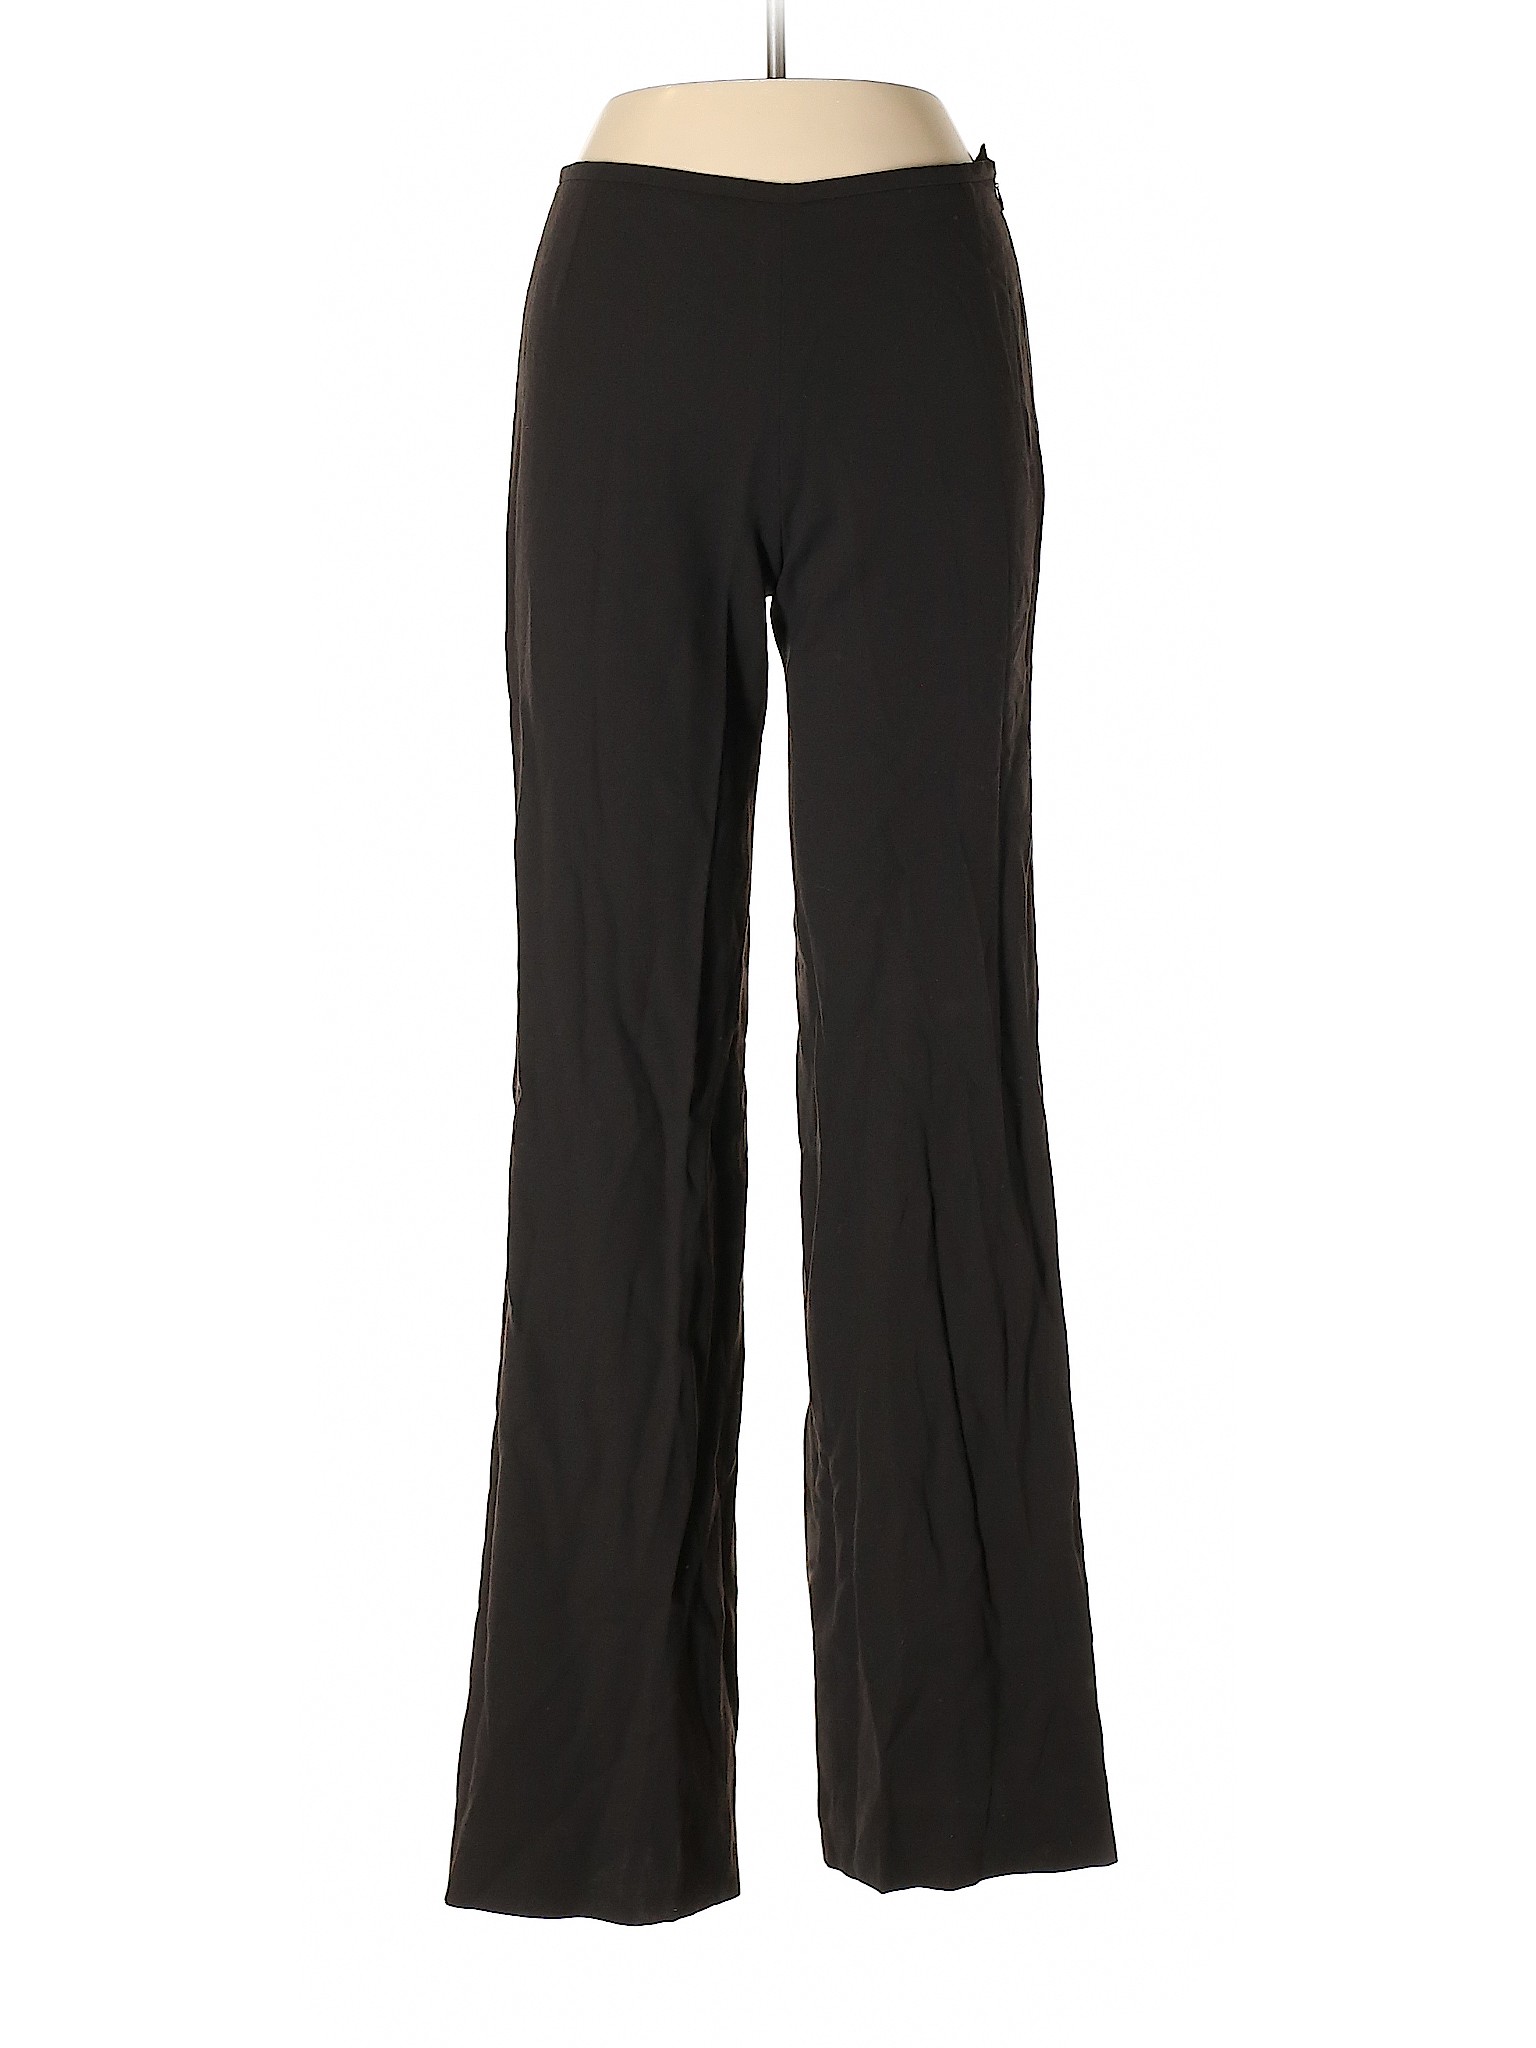 Armani Collezioni Women Black Wool Pants 6 | eBay